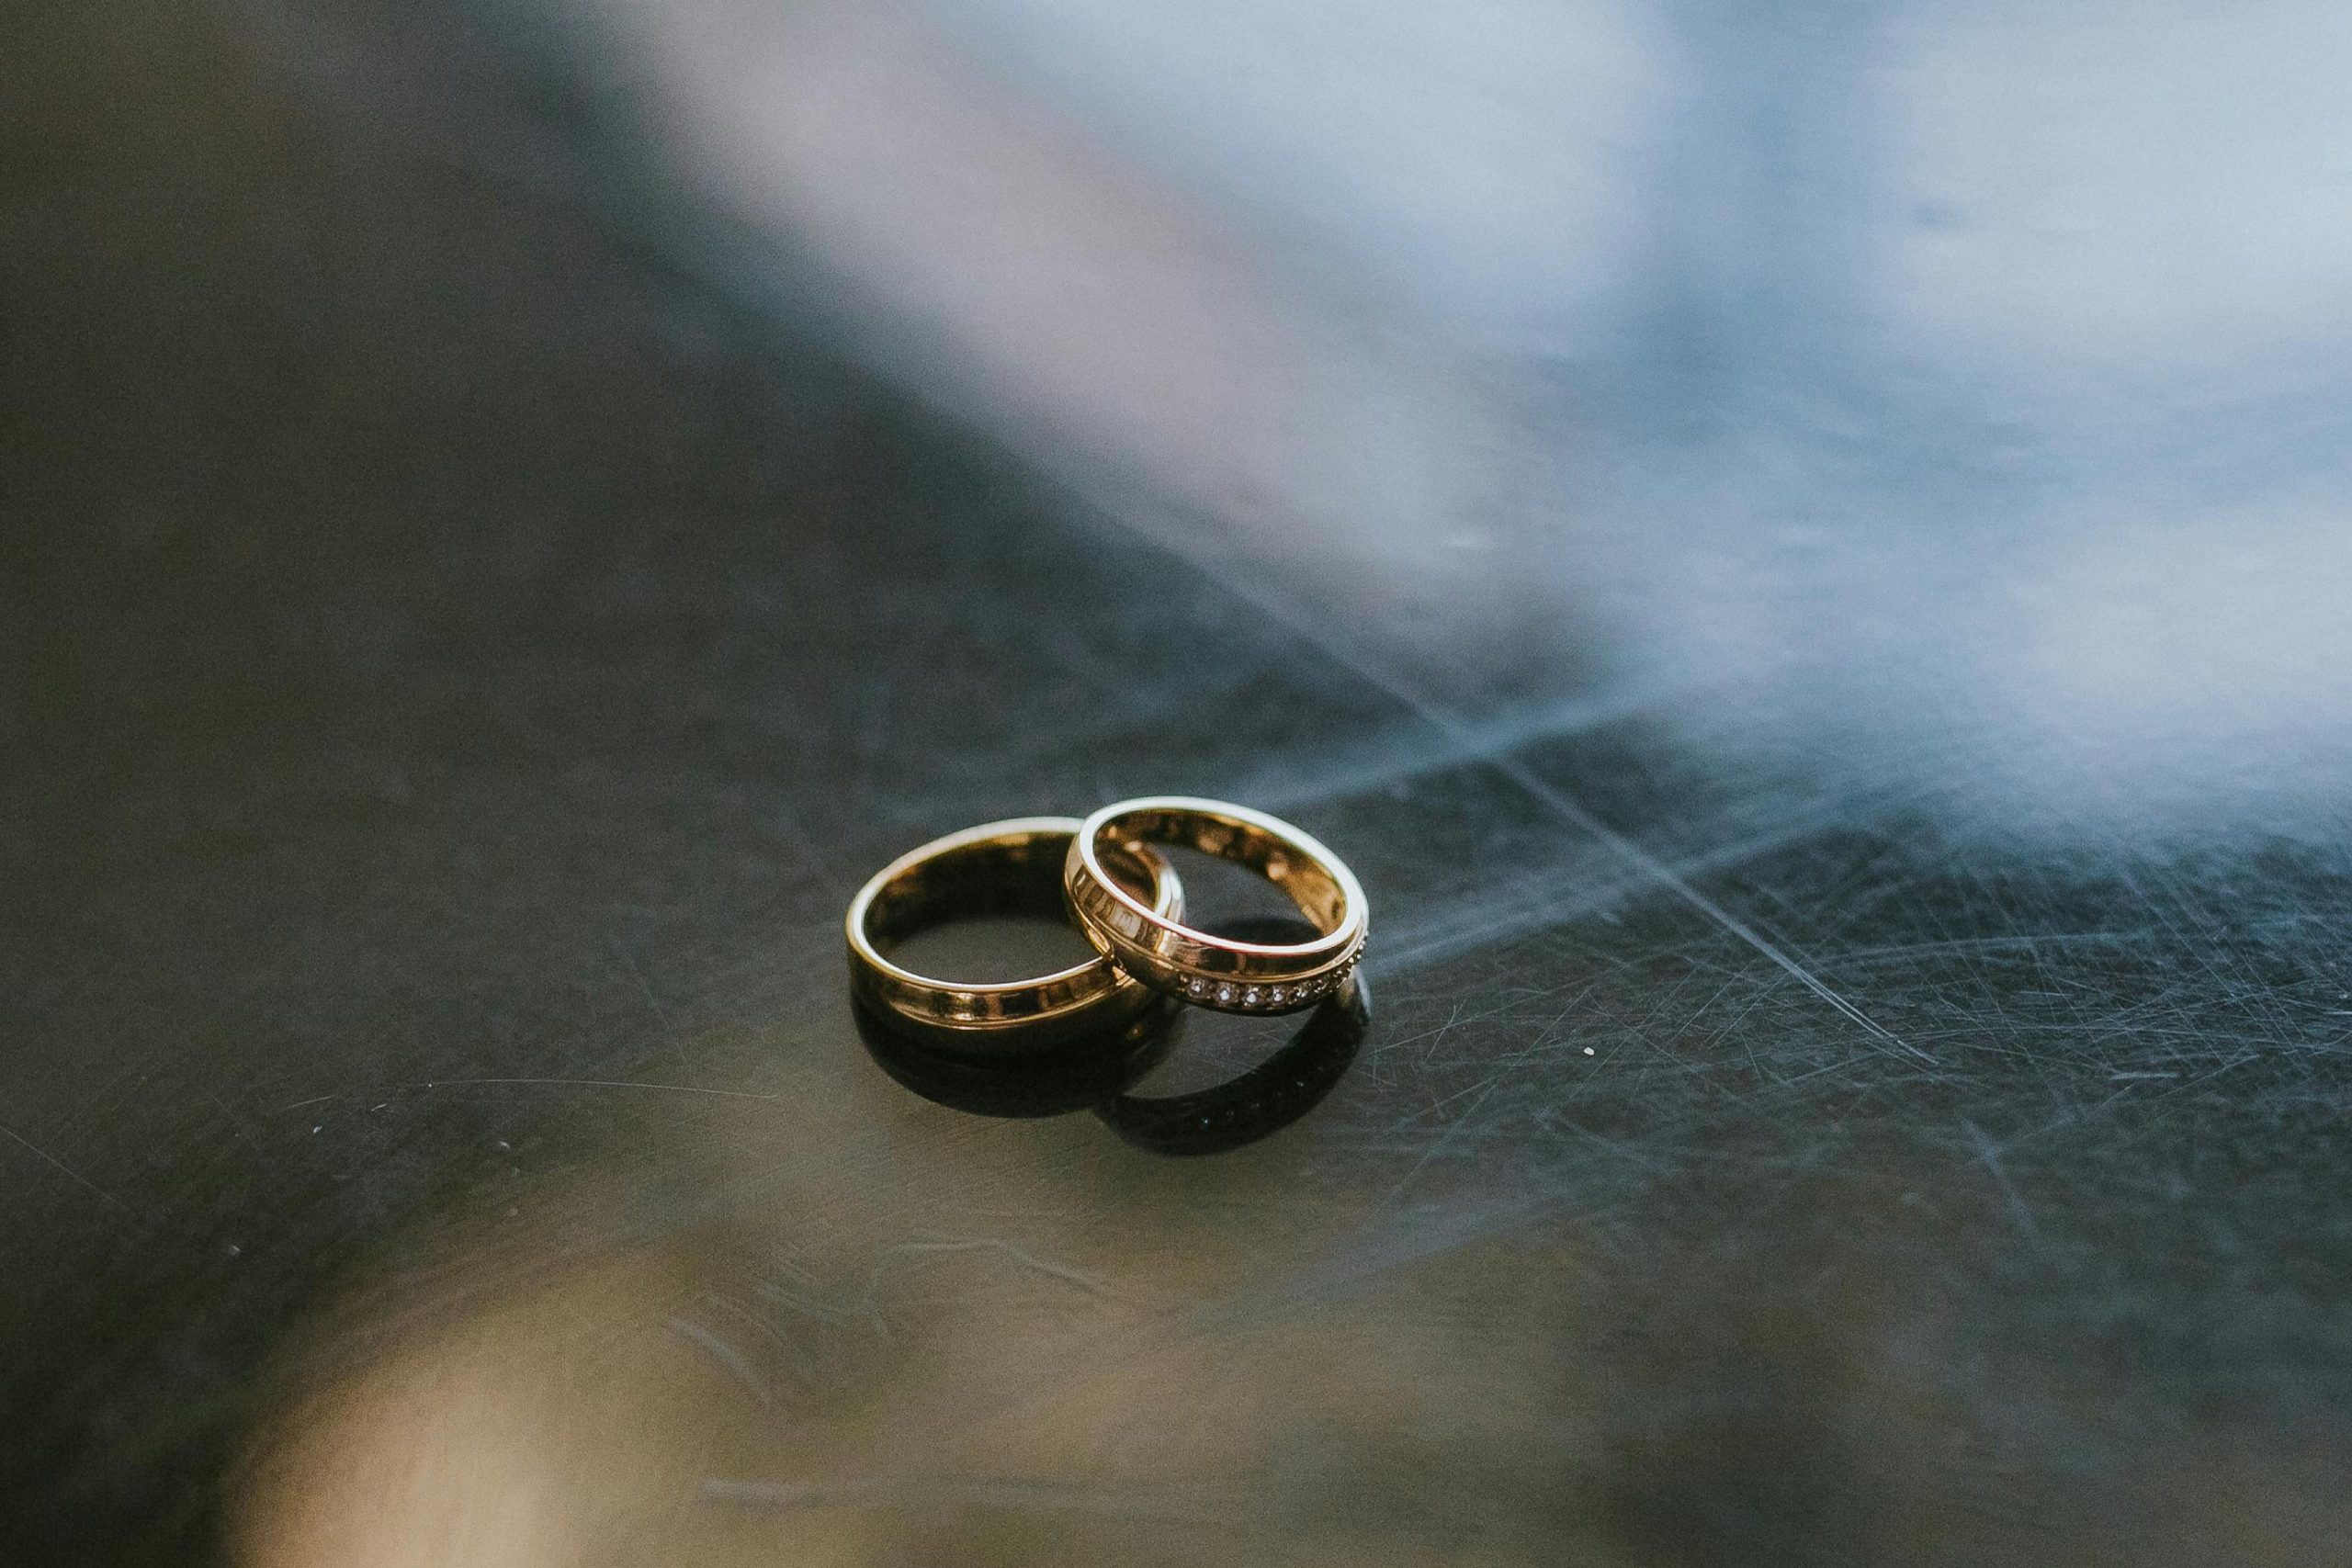 Descubre la magia de los anillos de compromiso en Zaragoza: joyas que cuentan historias de amor